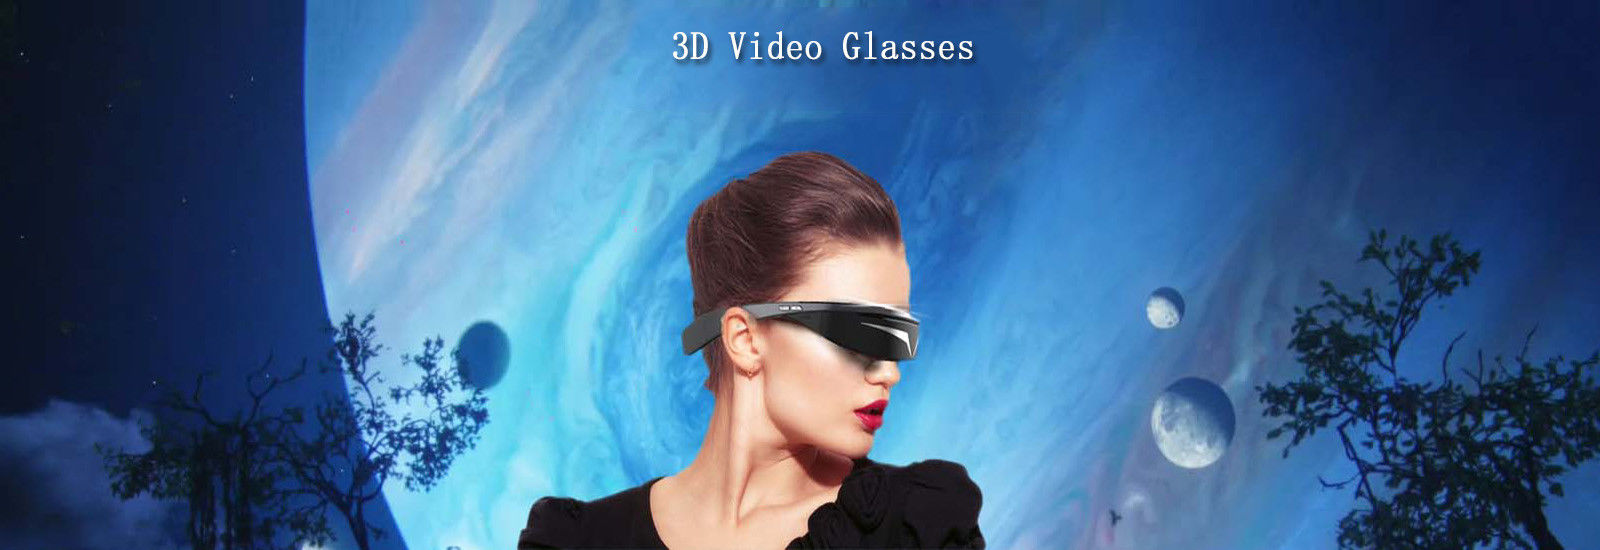 एफपीवी वीडियो चश्मा